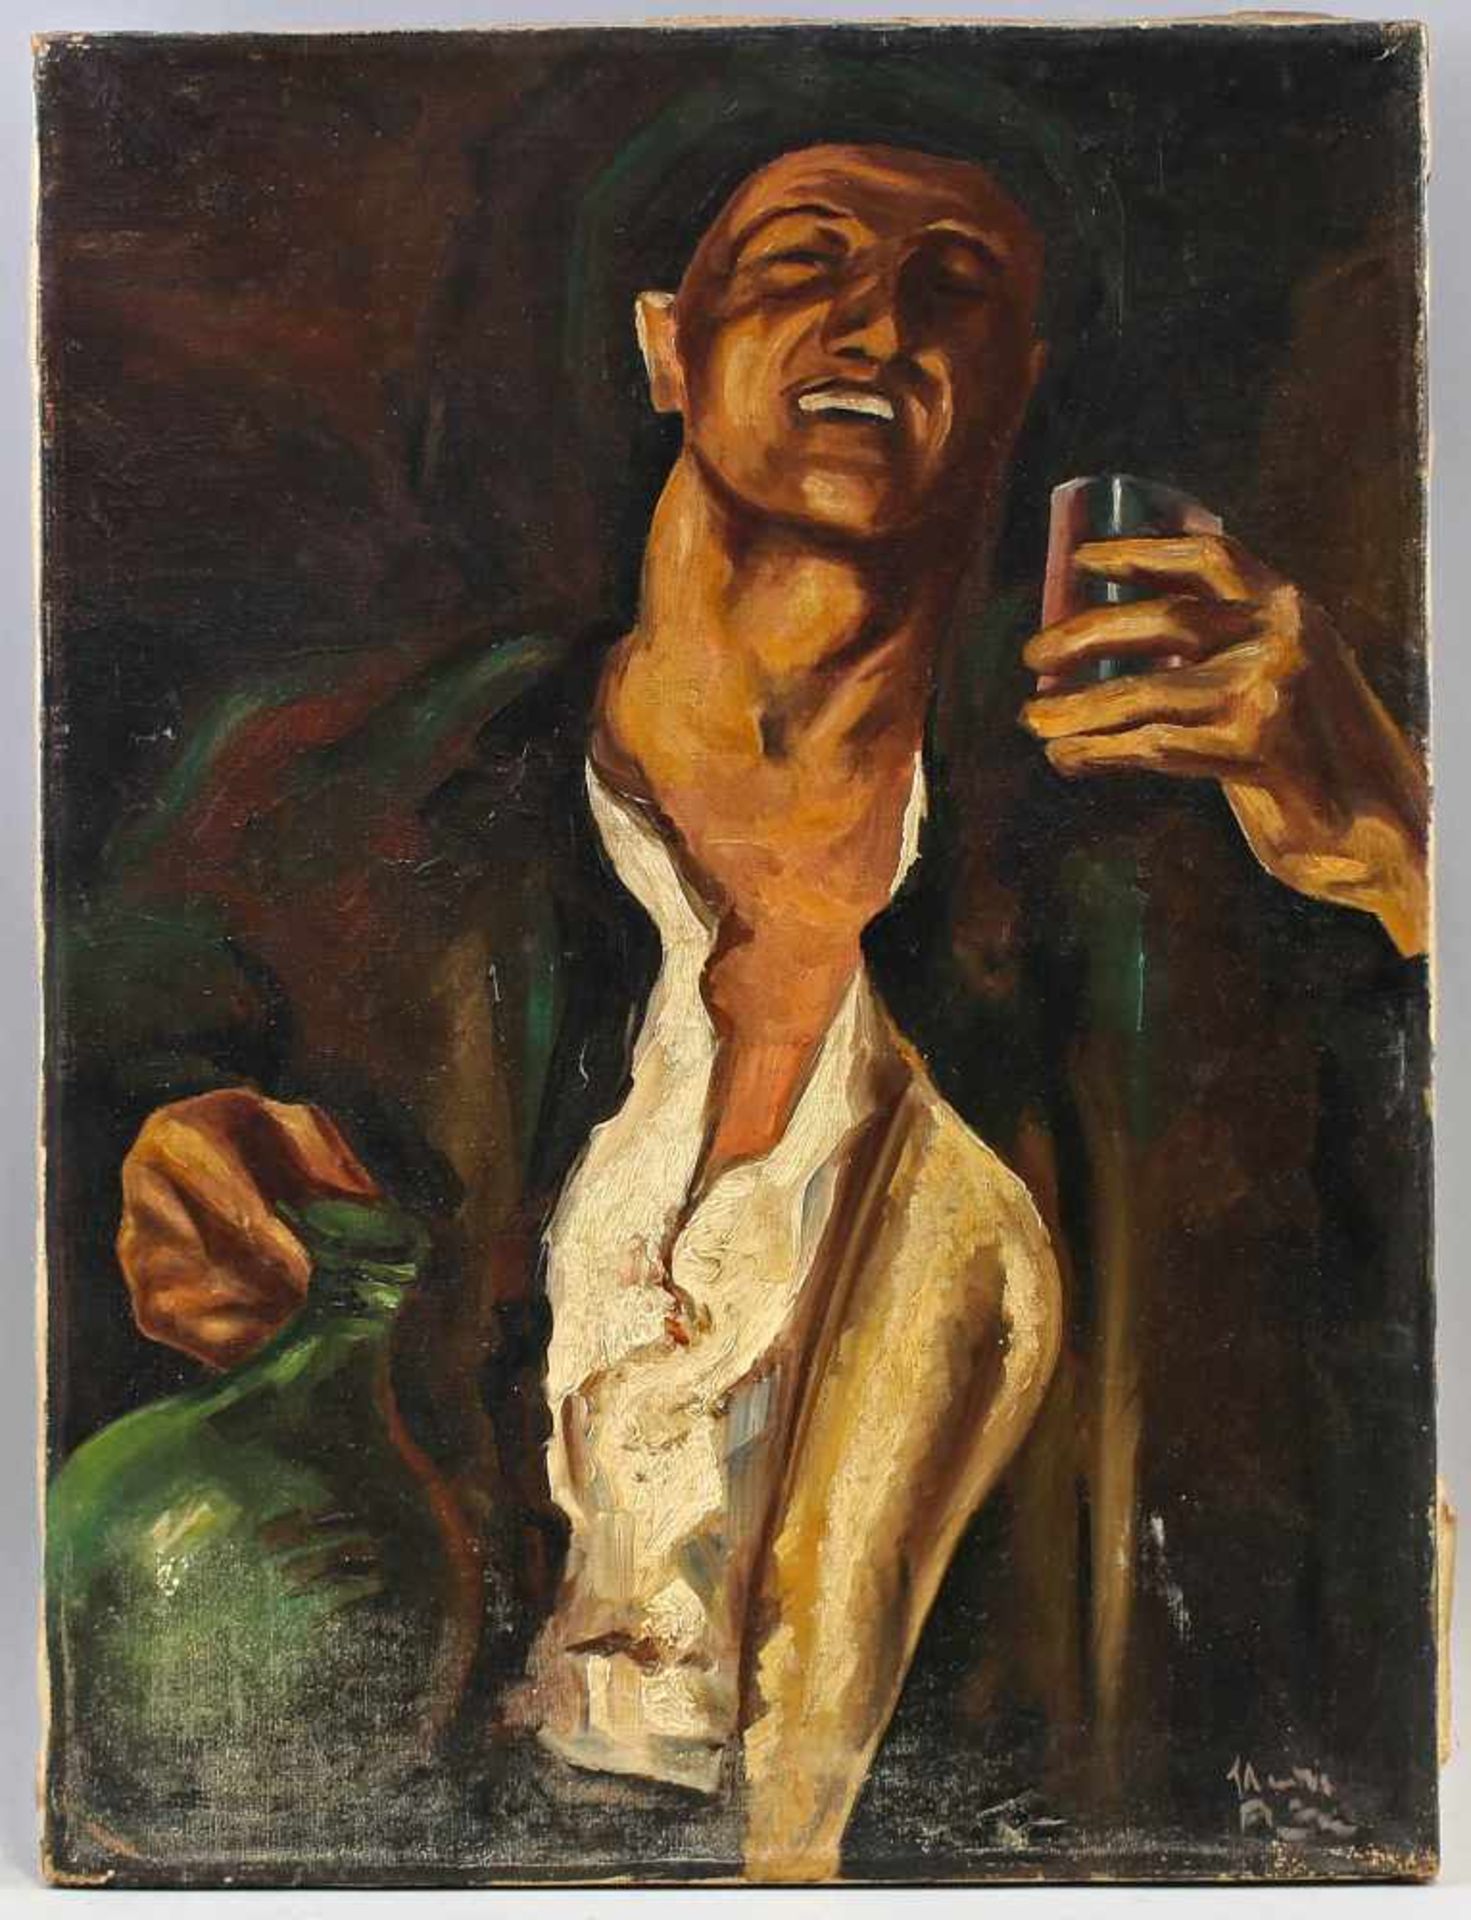 Kopie nach Heinrich Krause, Bildnis eines Trinkers